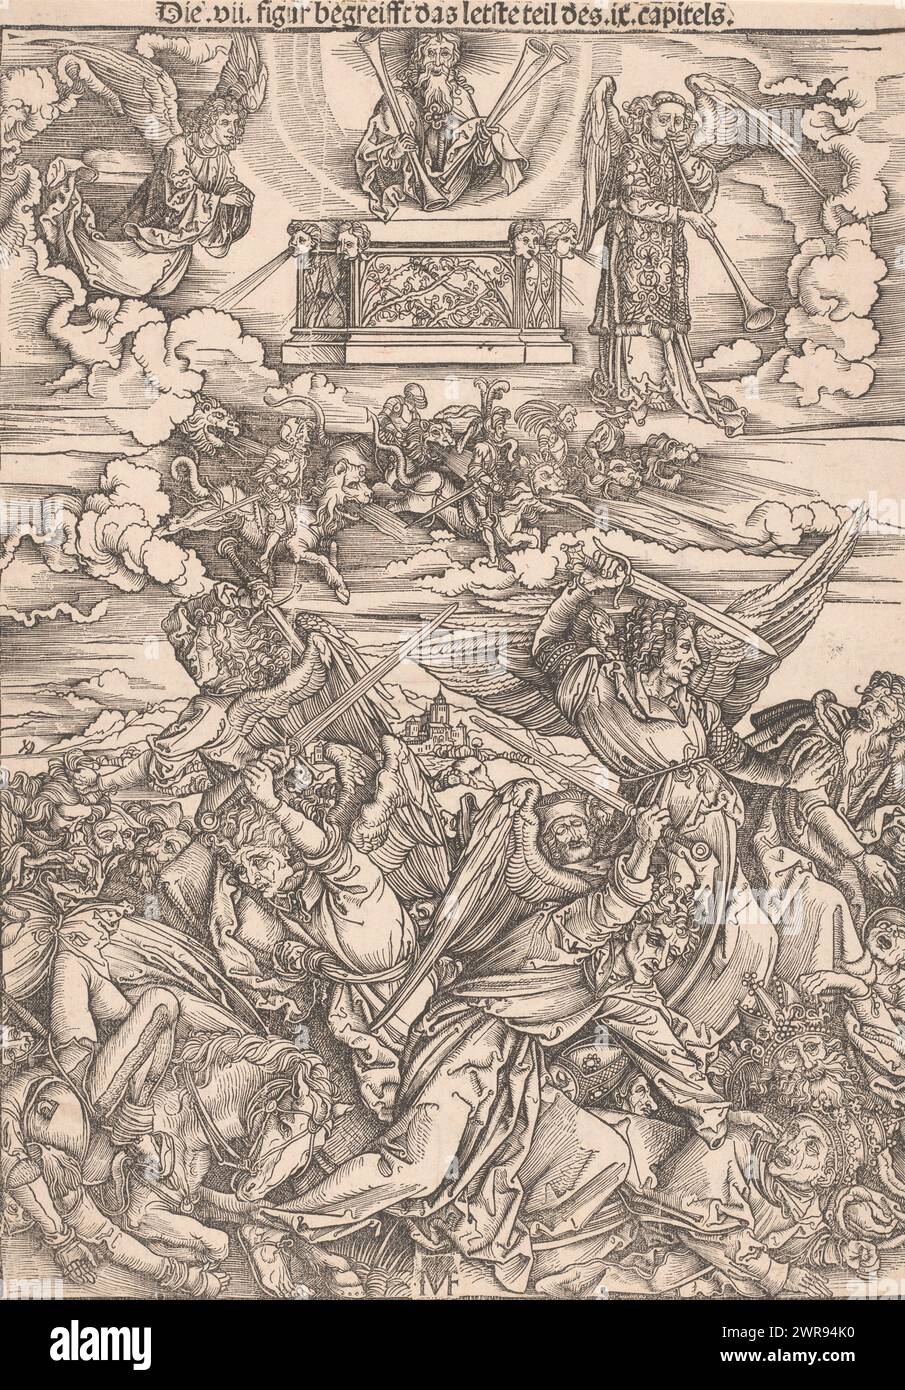 Die sechste Trompete, Kopien nach Dürers Apokalypse (Serientitel), ließ die sechste Trompete die vier Todesengel mit ihrer Kavallerie frei, die auf Pferden mit feuerspeienden Löwenköpfen und Schlangenschwänzen reiteten. Sie schlachten Papst, König und Volk mit ihren Schwertern ab. Gott wacht vom Himmel mit Trompeten in der Hand., Druckerei: Ieronimus Greff von Frankfurt, nach Druck: Albrecht Dürer, 1502, Papier, Höhe 390 mm x Breite 280 mm, Druck Stockfoto